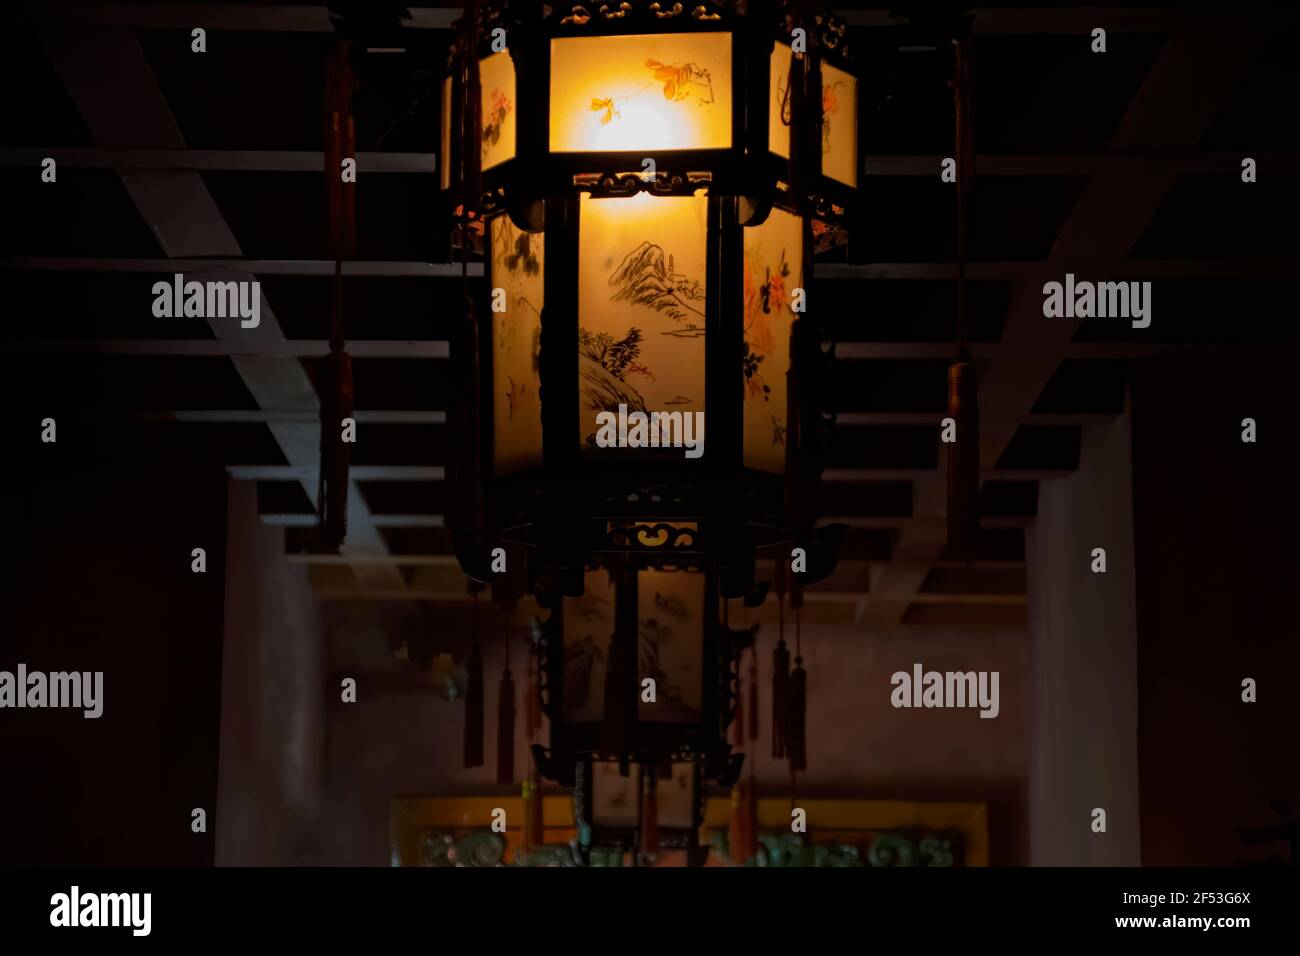 Lampe in einem Tempel in einem chinesischen Garten Stockfotografie - Alamy